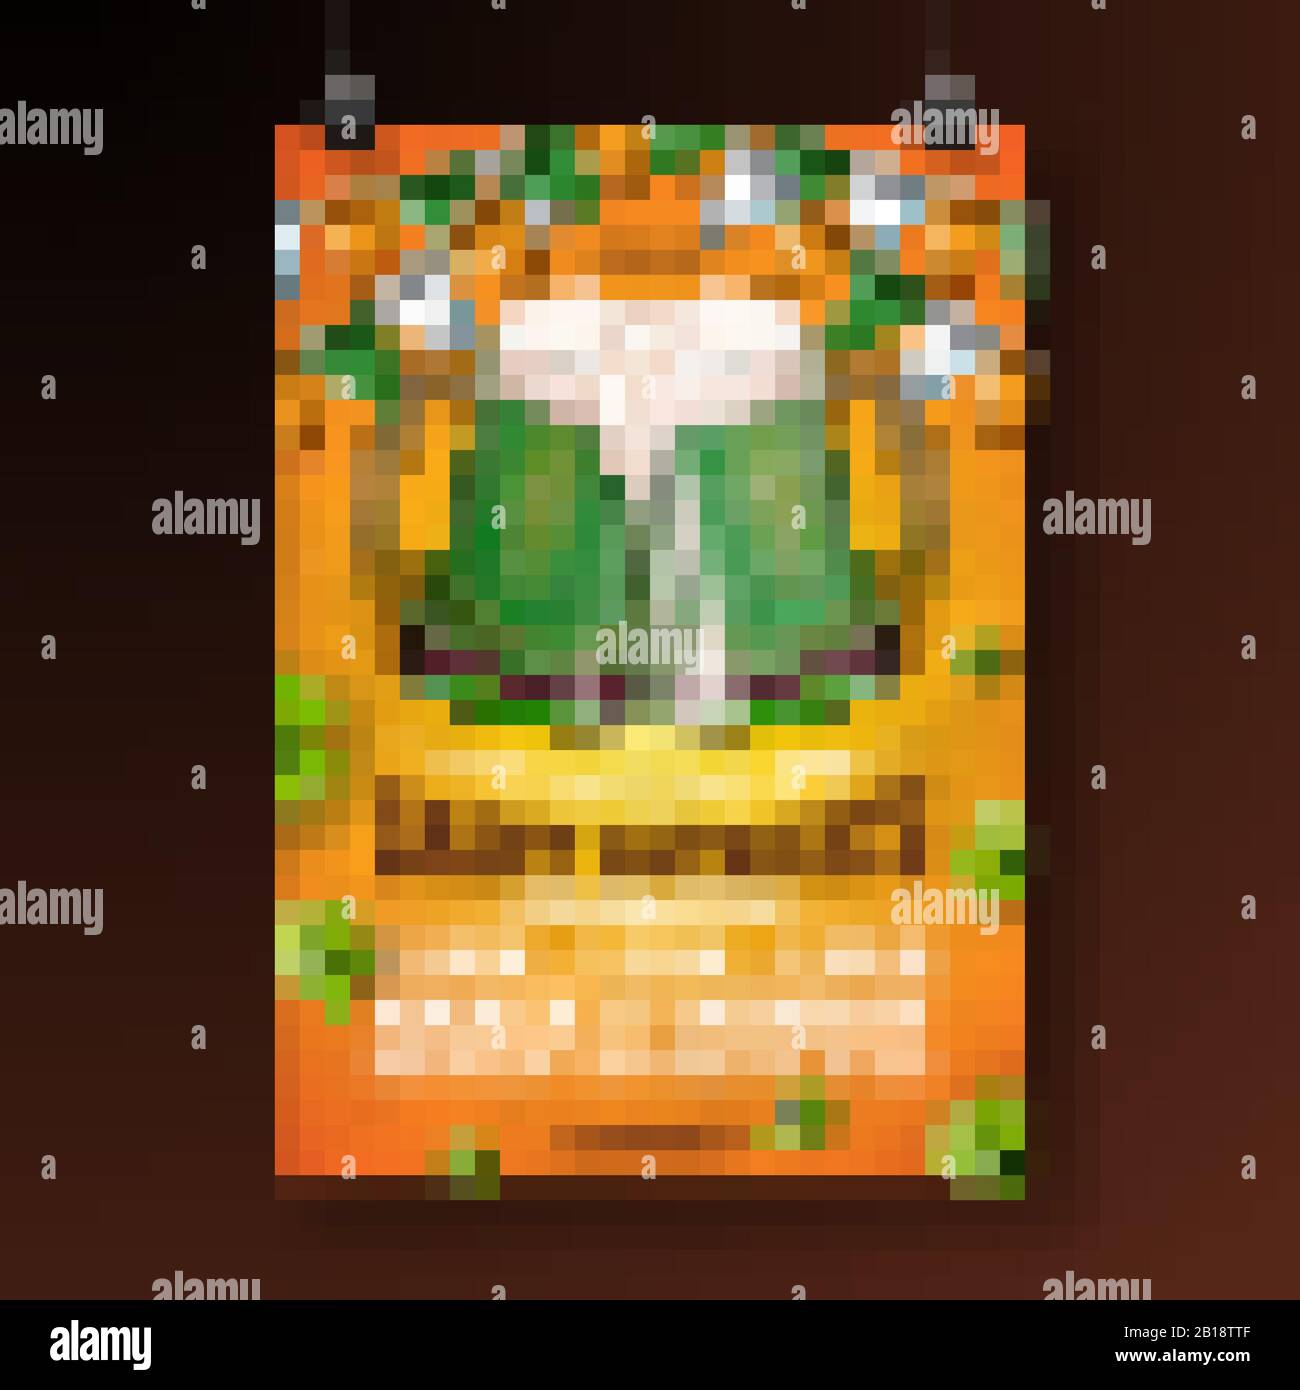 Saint Patricks Day Party Flyer Illustration mit Green Beer, Flag und Clover auf Orange Hintergrund. Vector Irish Lucky Holiday Design zum Feiern Stock Vektor